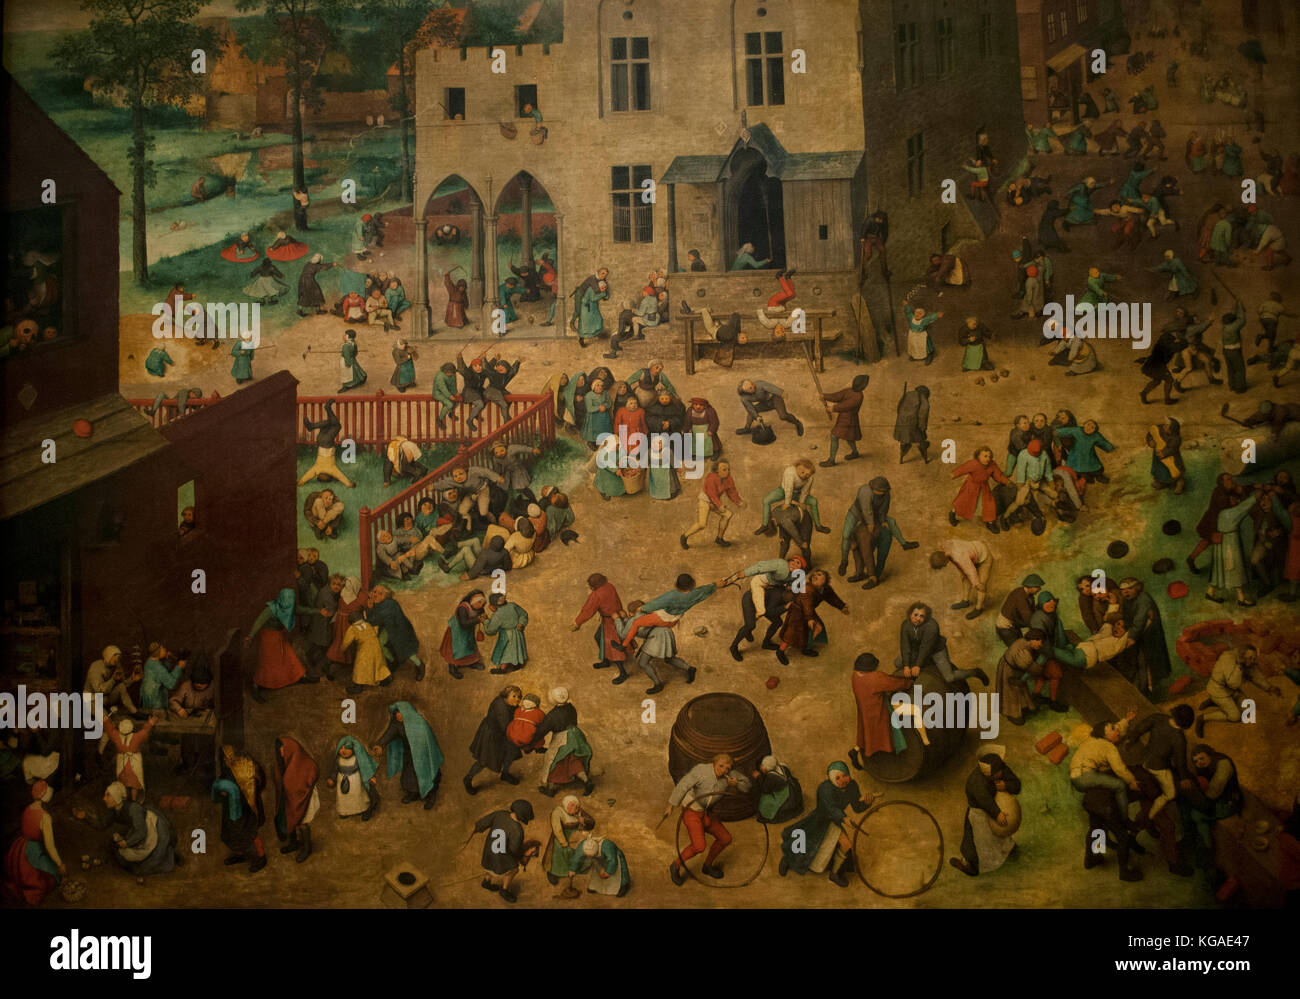 Pieter Bruegel l'ancien. artish de néerlandais et flamand. renaissance. Jeux d'enfants, 1560. huile sur panneau. Musée de l'histoire de l'art (Kunsthistorisches Museum). Vienne. L'Autriche. Banque D'Images